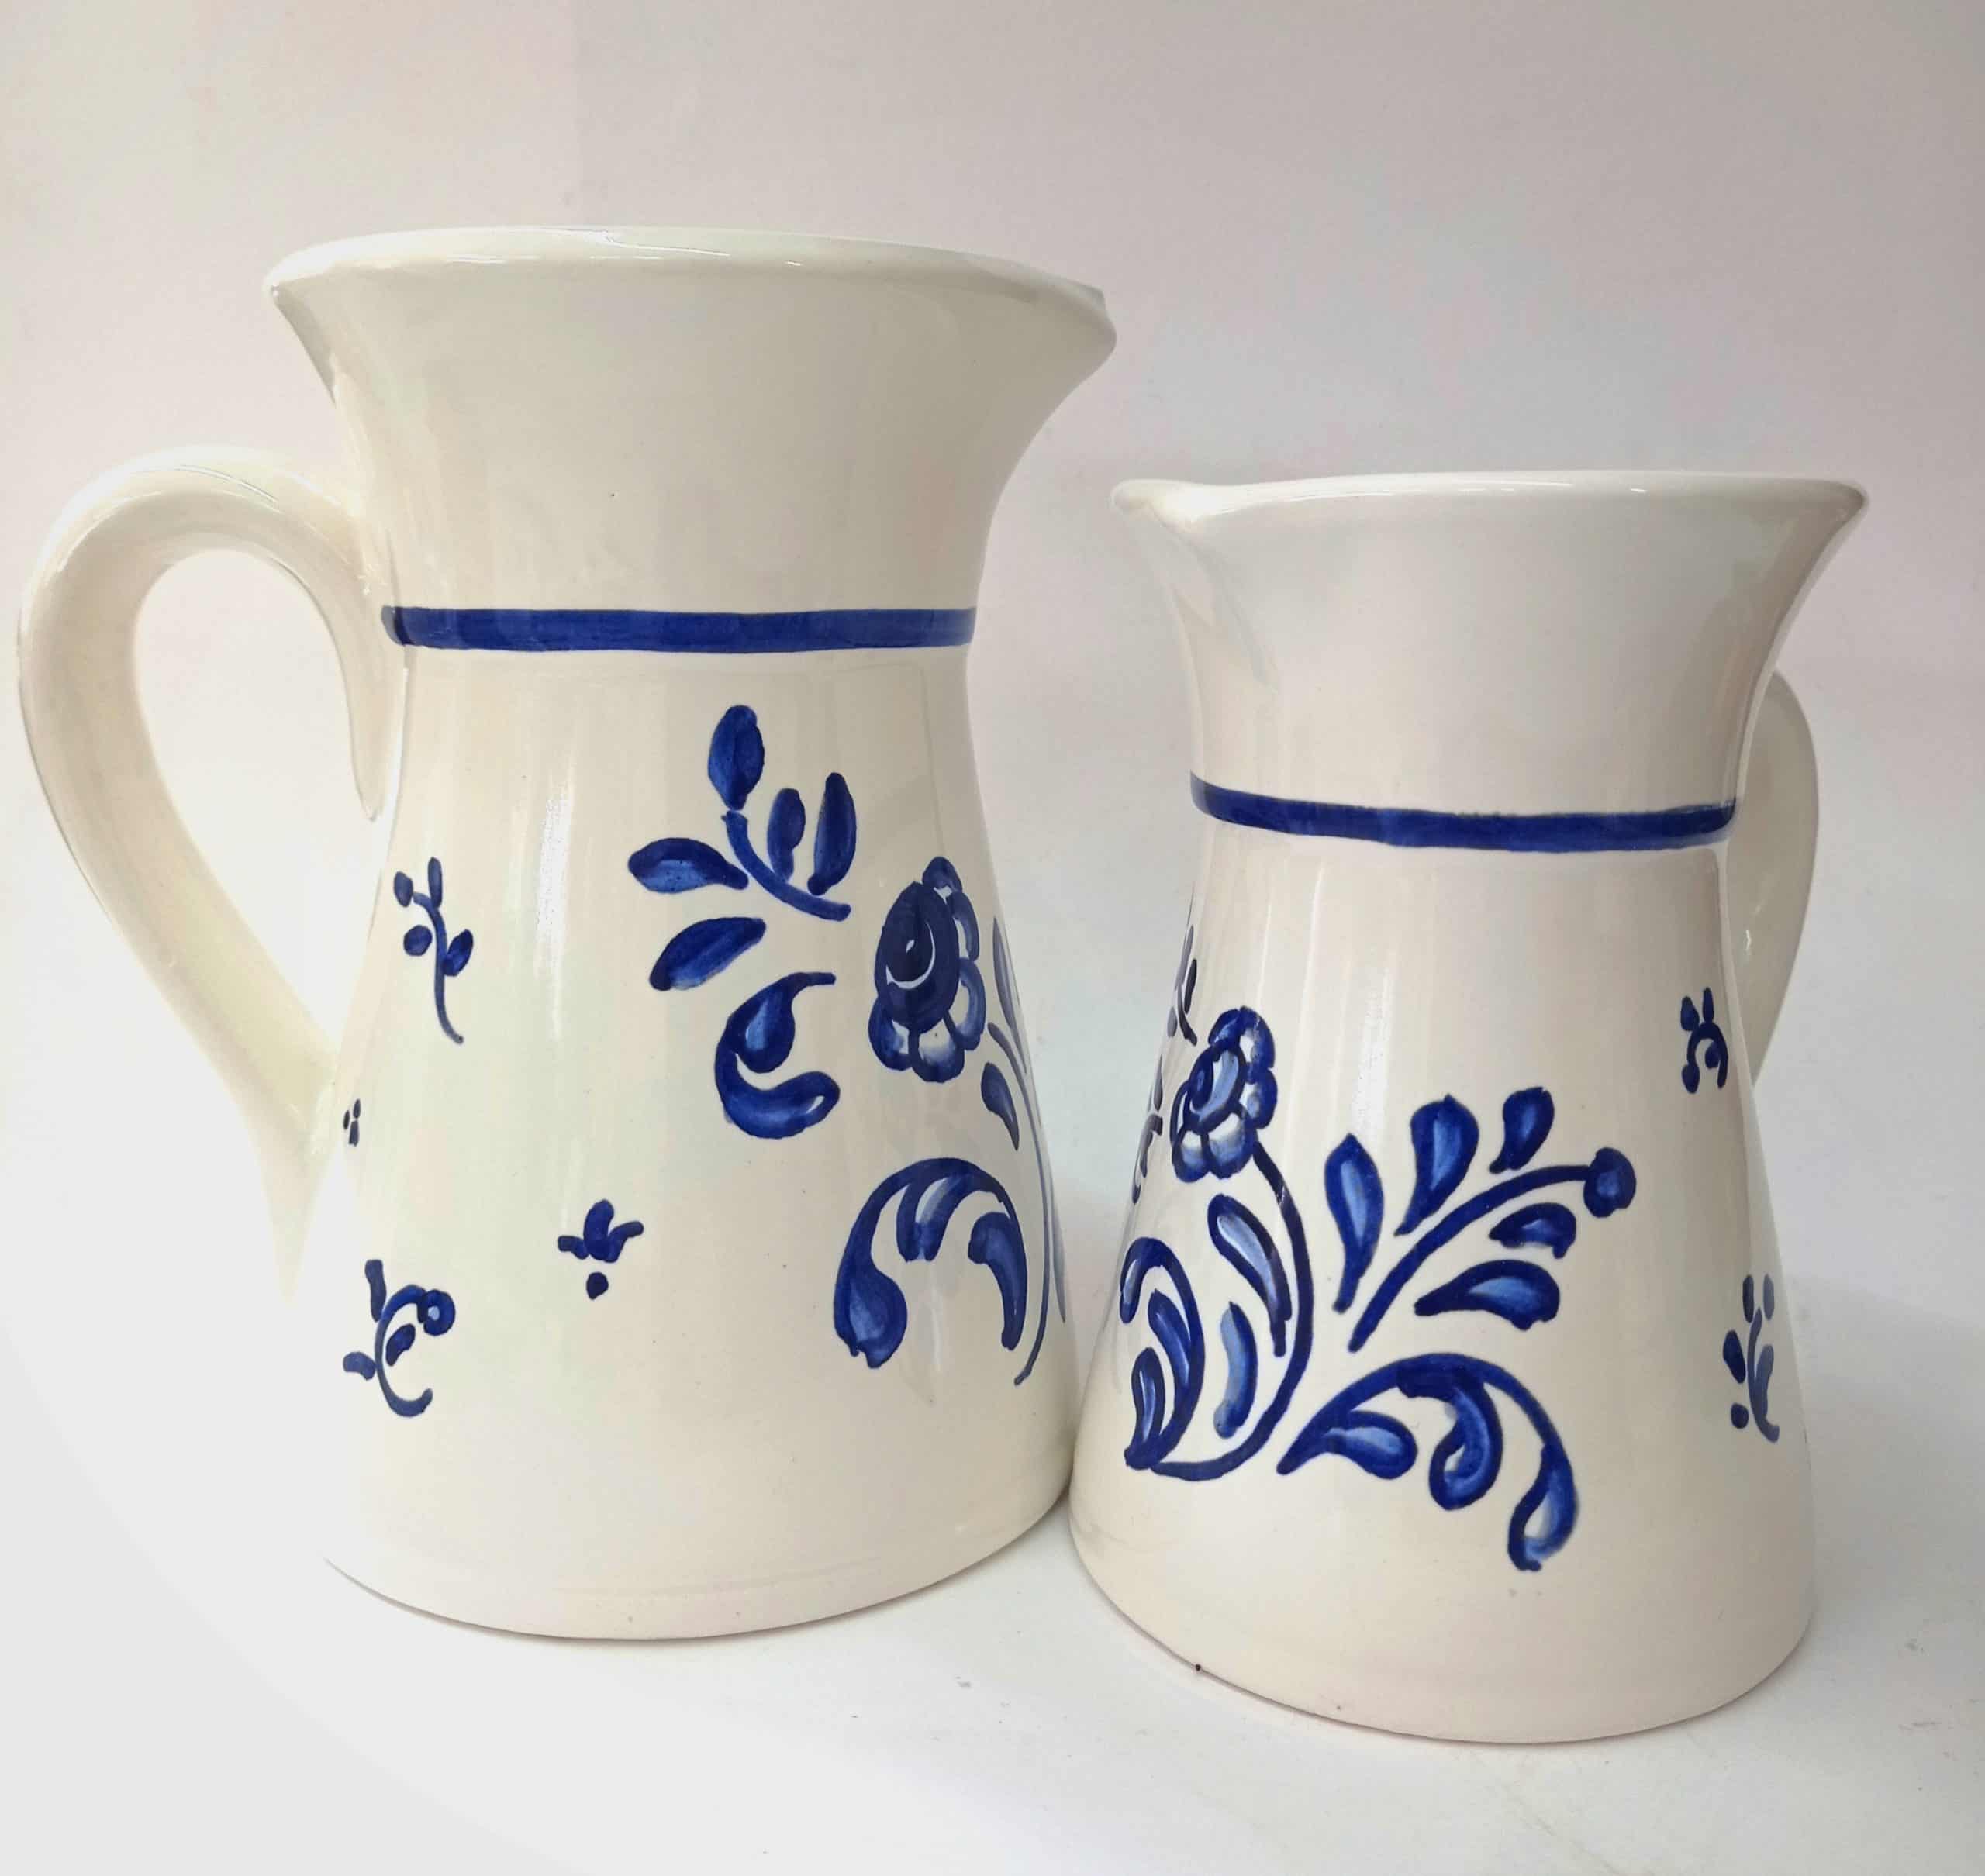 jarras de cerámica tradicional, decoración de interiores, cerámica para decorar el hogar, cerámica artesanal.